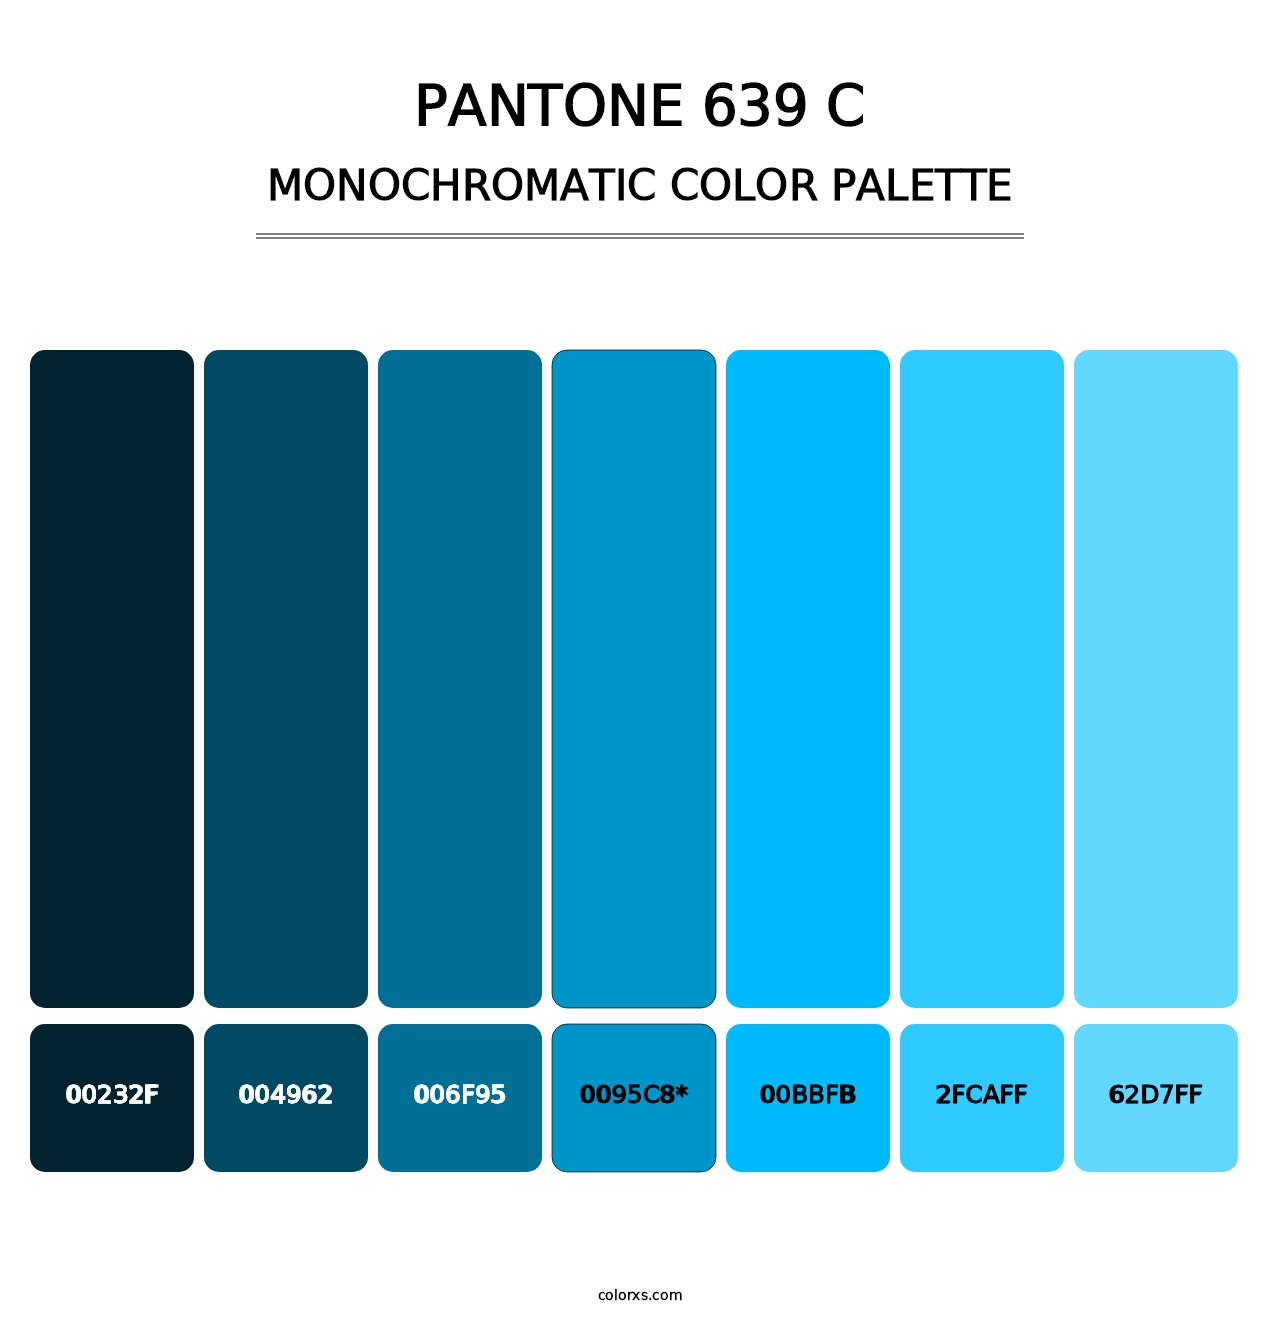 PANTONE 639 C - Monochromatic Color Palette